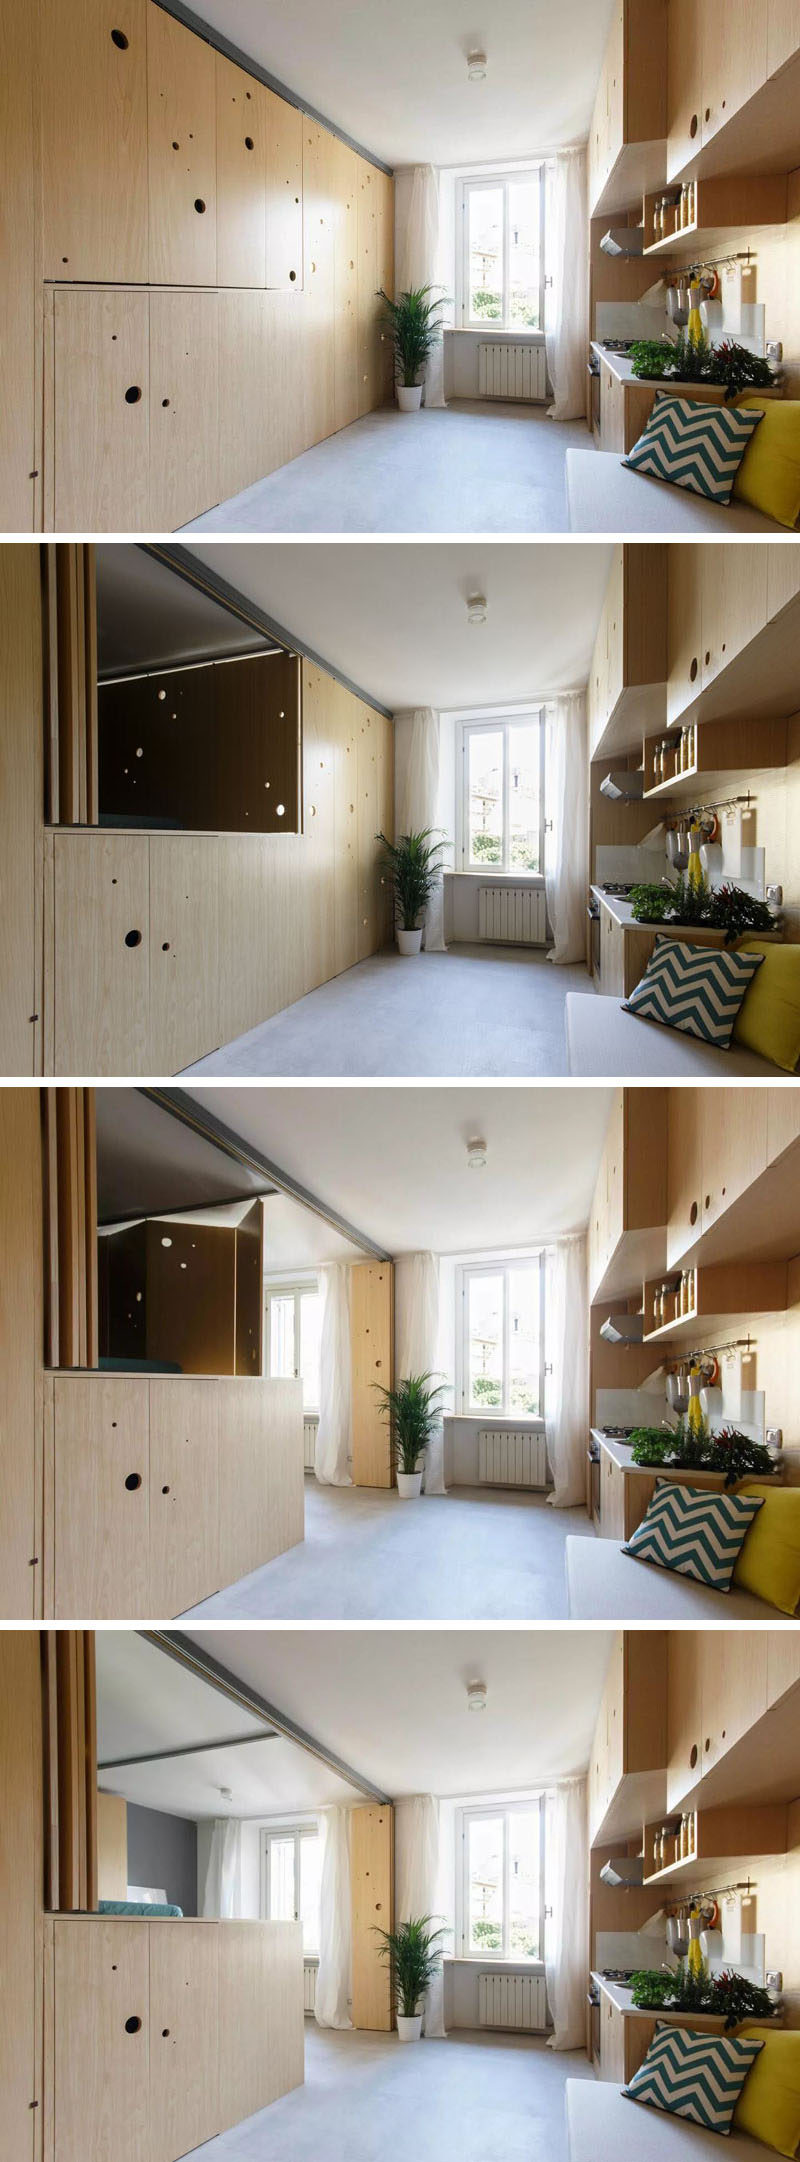 Эта крошечная квартира имеет стену, которая открывается открывая спальню и столовую 